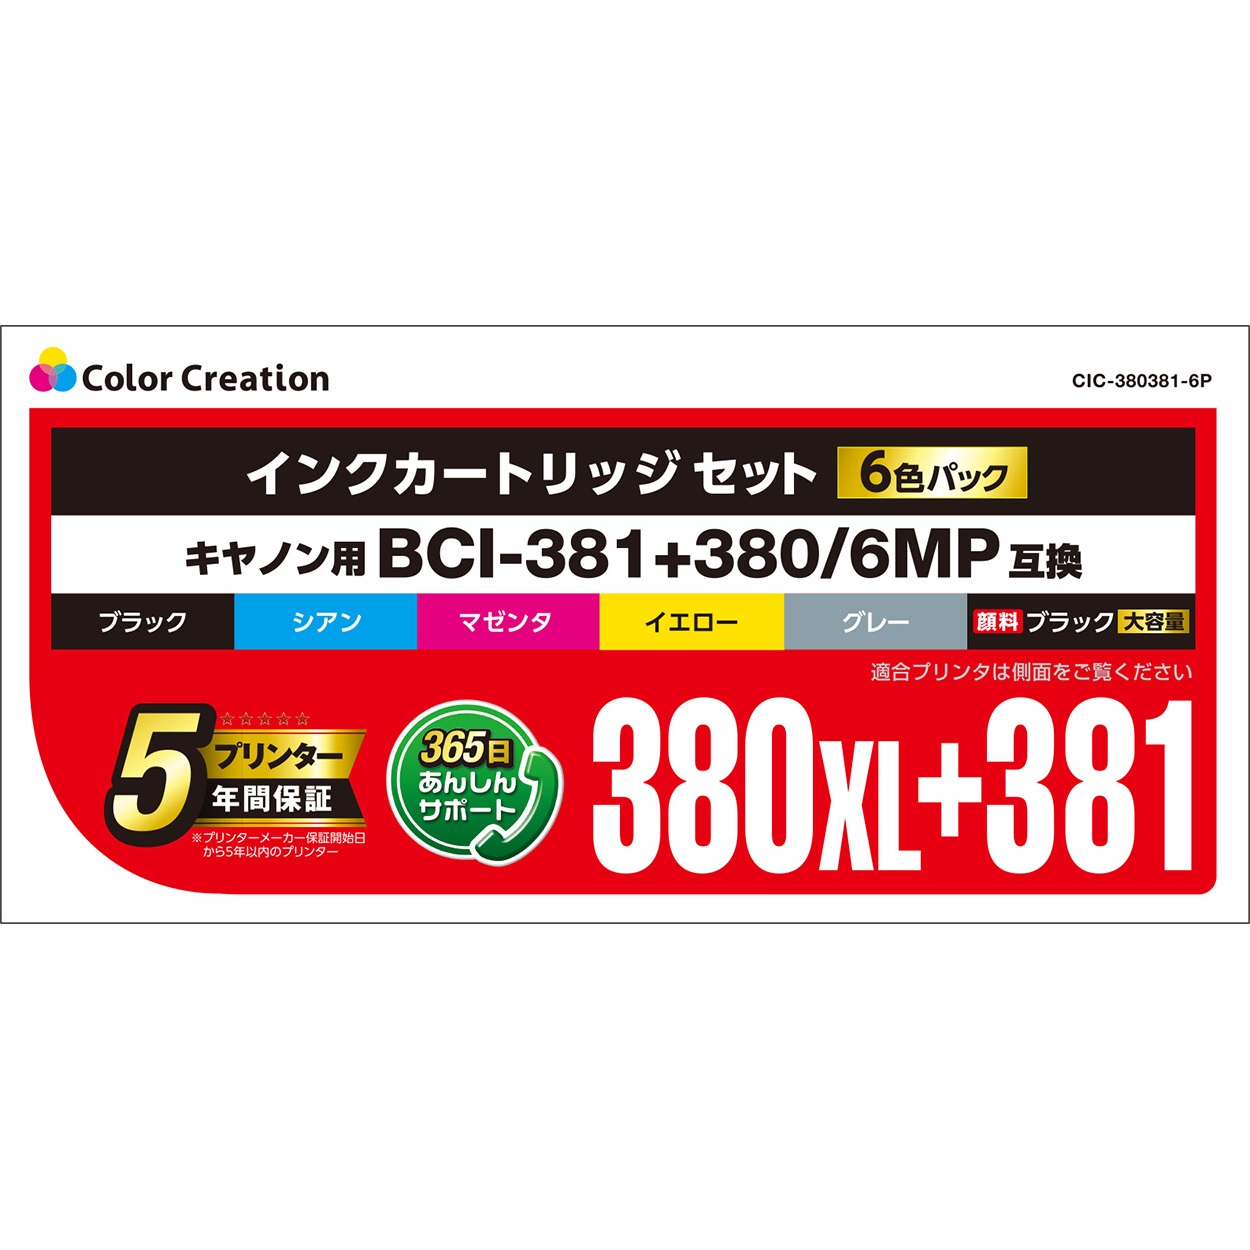 キヤノン BCI-381+380/6MP互換 インクカートリッジセット CIC-380381